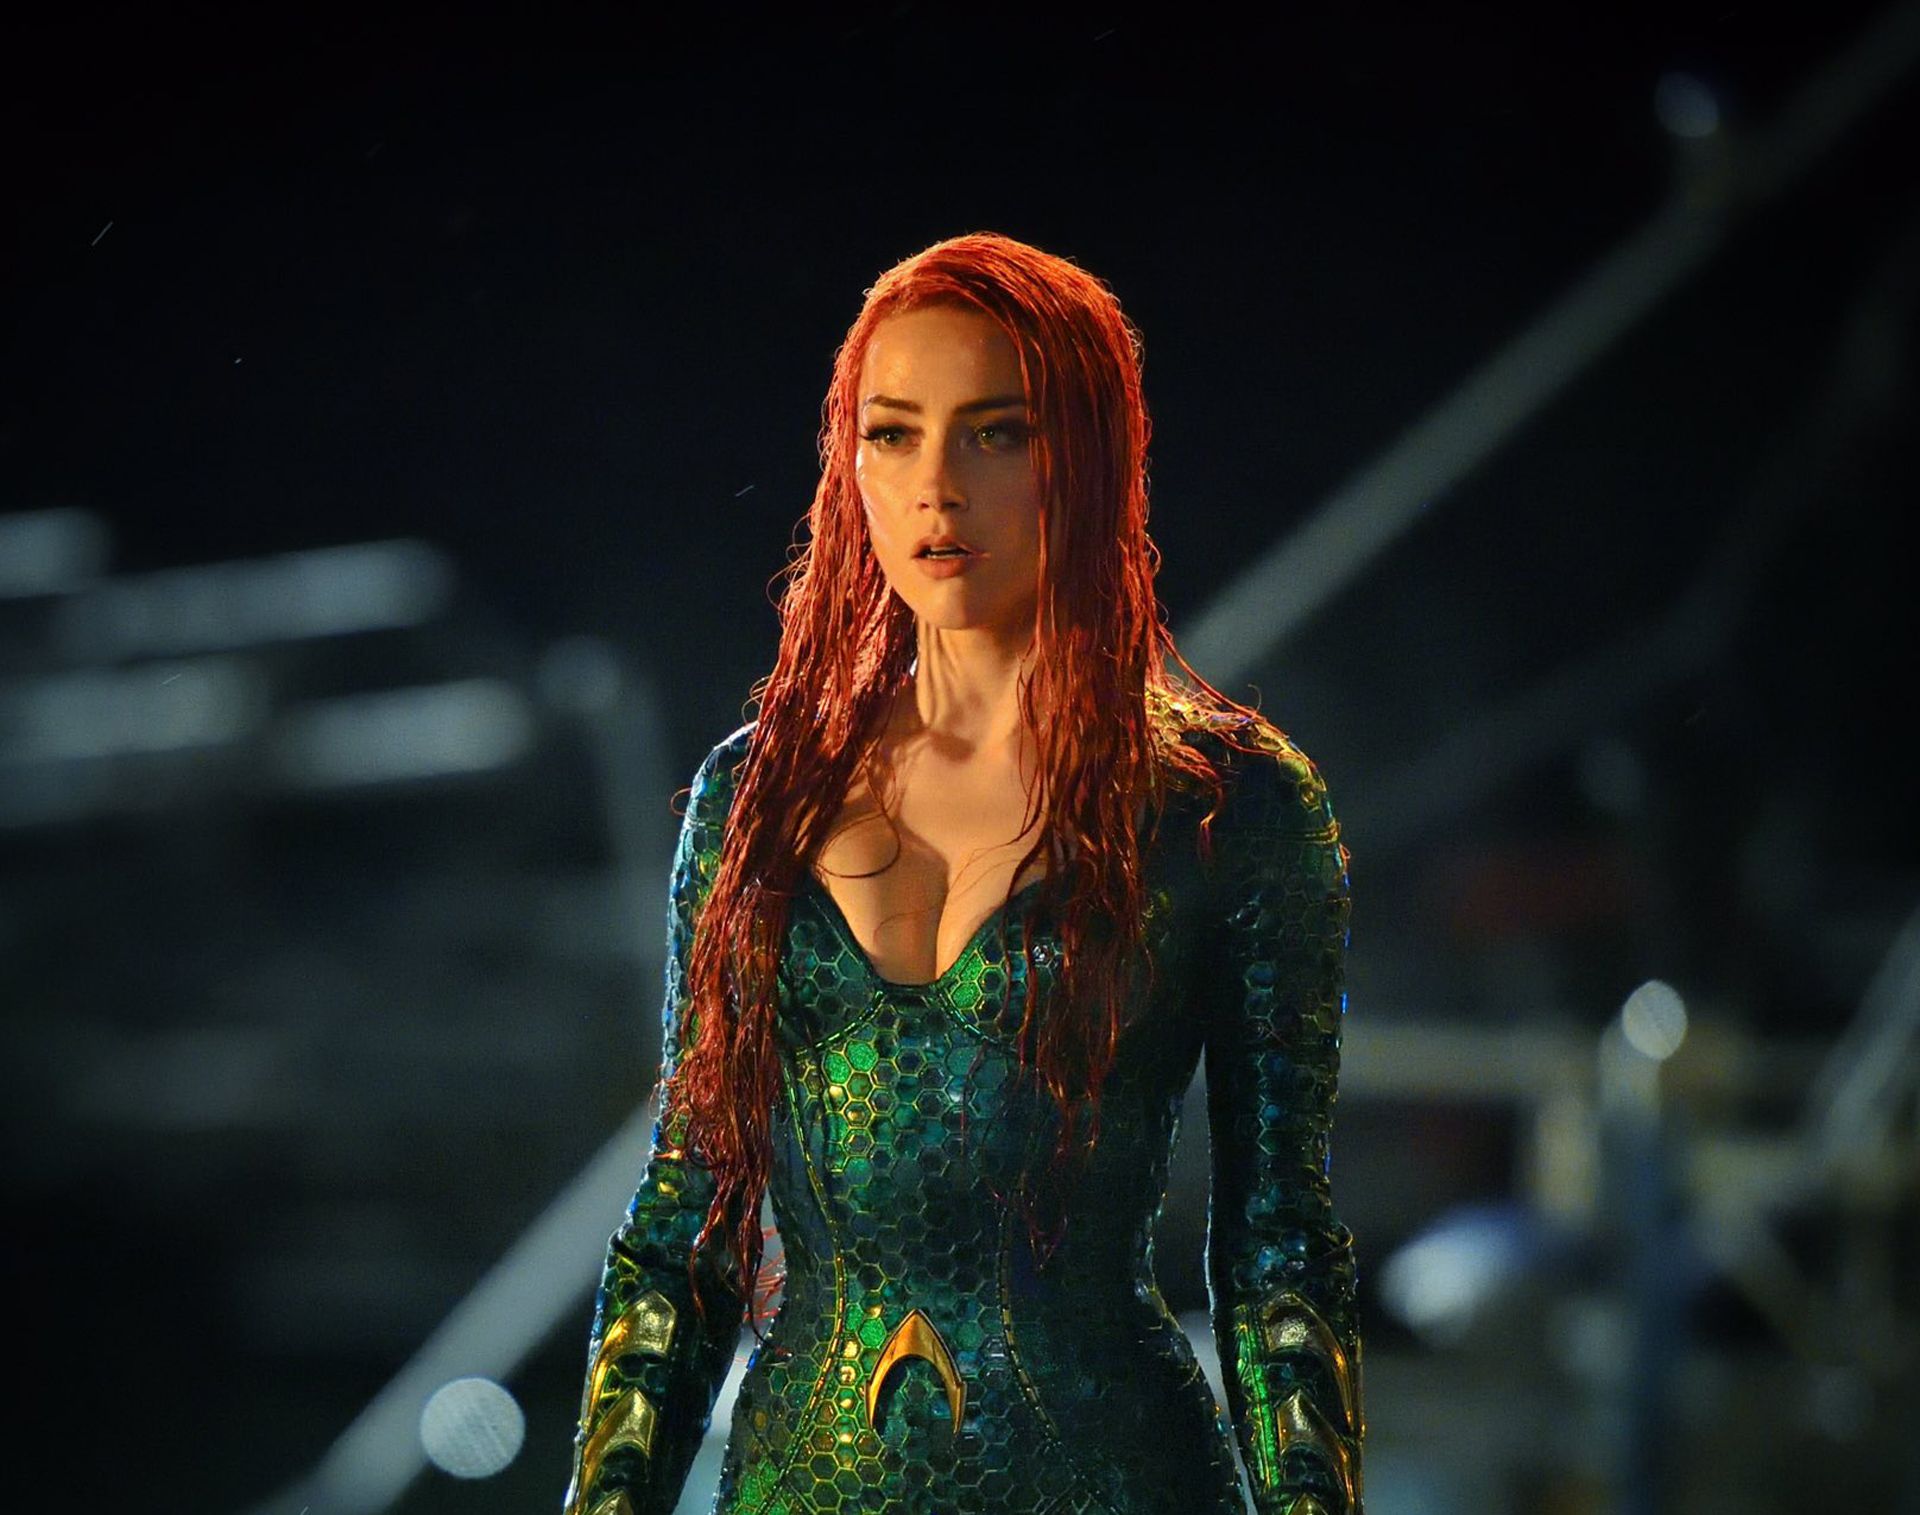 Amber Heard As Mera And Jason Momoa As Aquaman Wallpapers